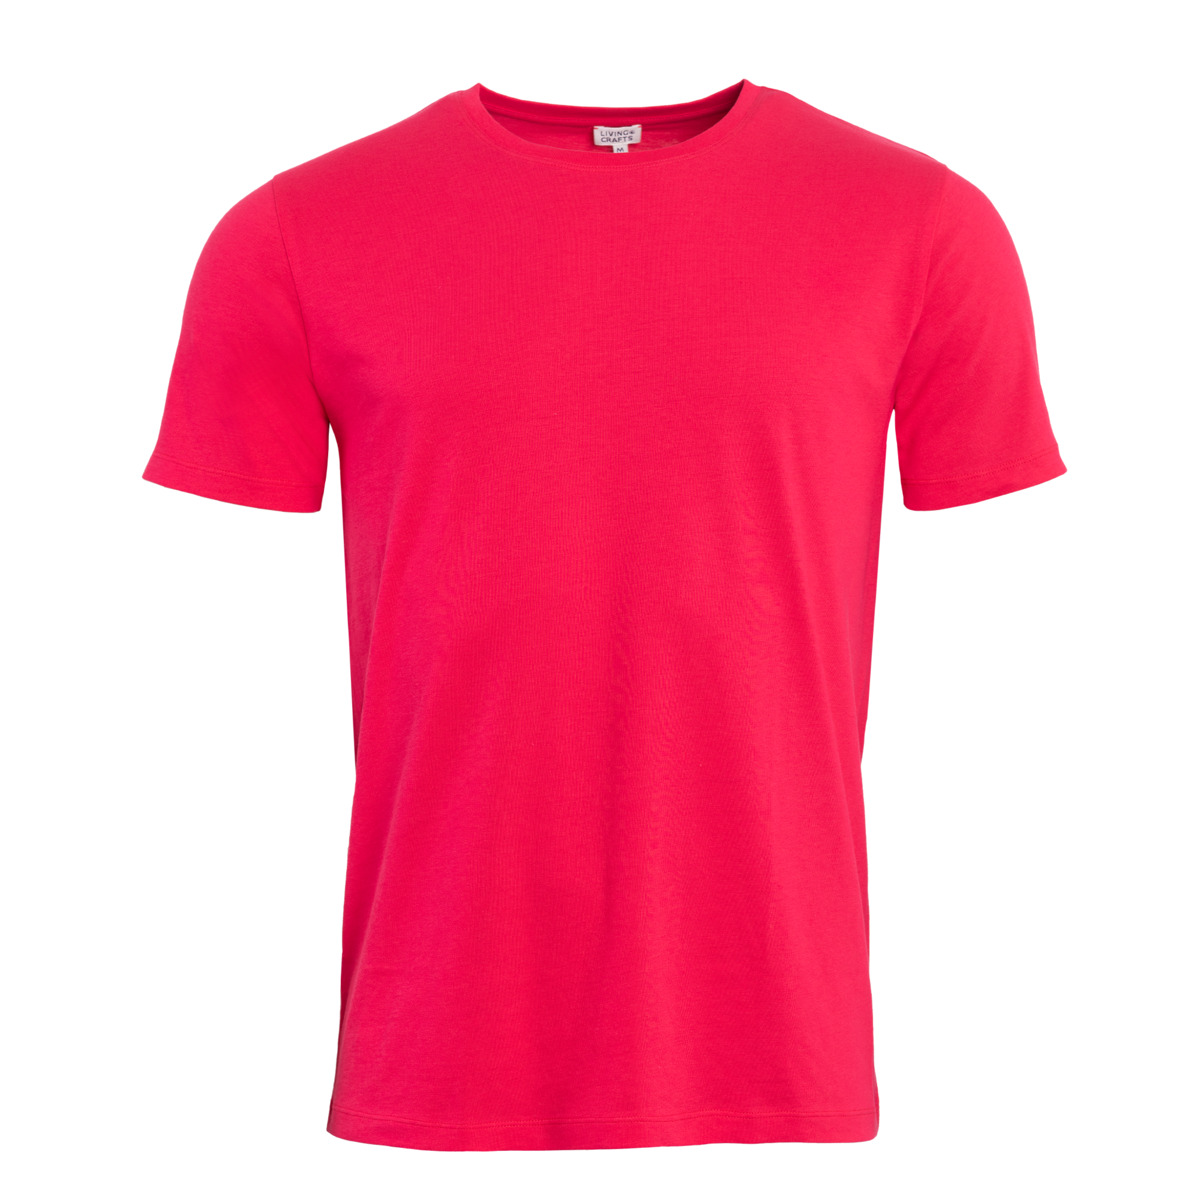 Red T-shirt, ILKO